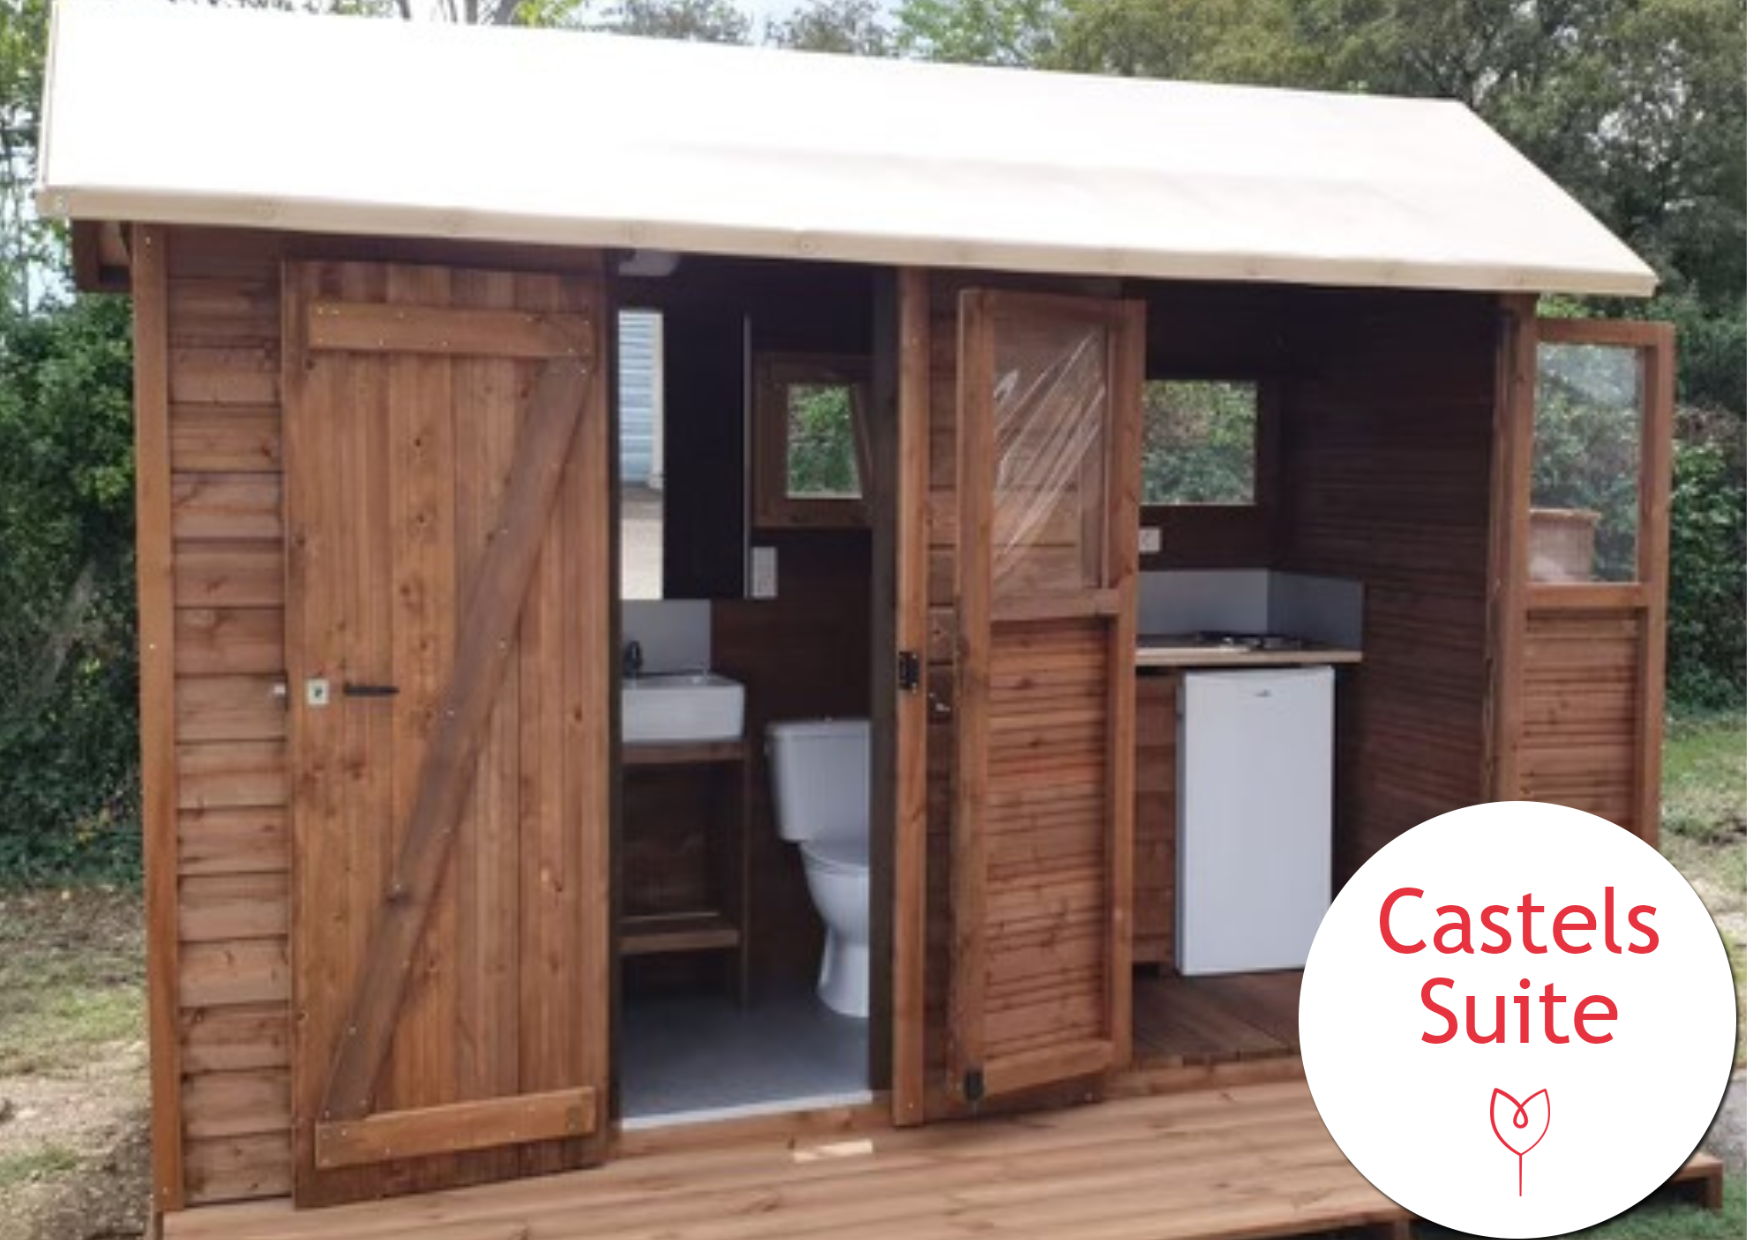 Emplacement - Emplacement Castels Premium Suite Avec Sanitaire Individuel + Cuisine +Electricité 16A + Eau + Evac. - Camping la Garangeoire